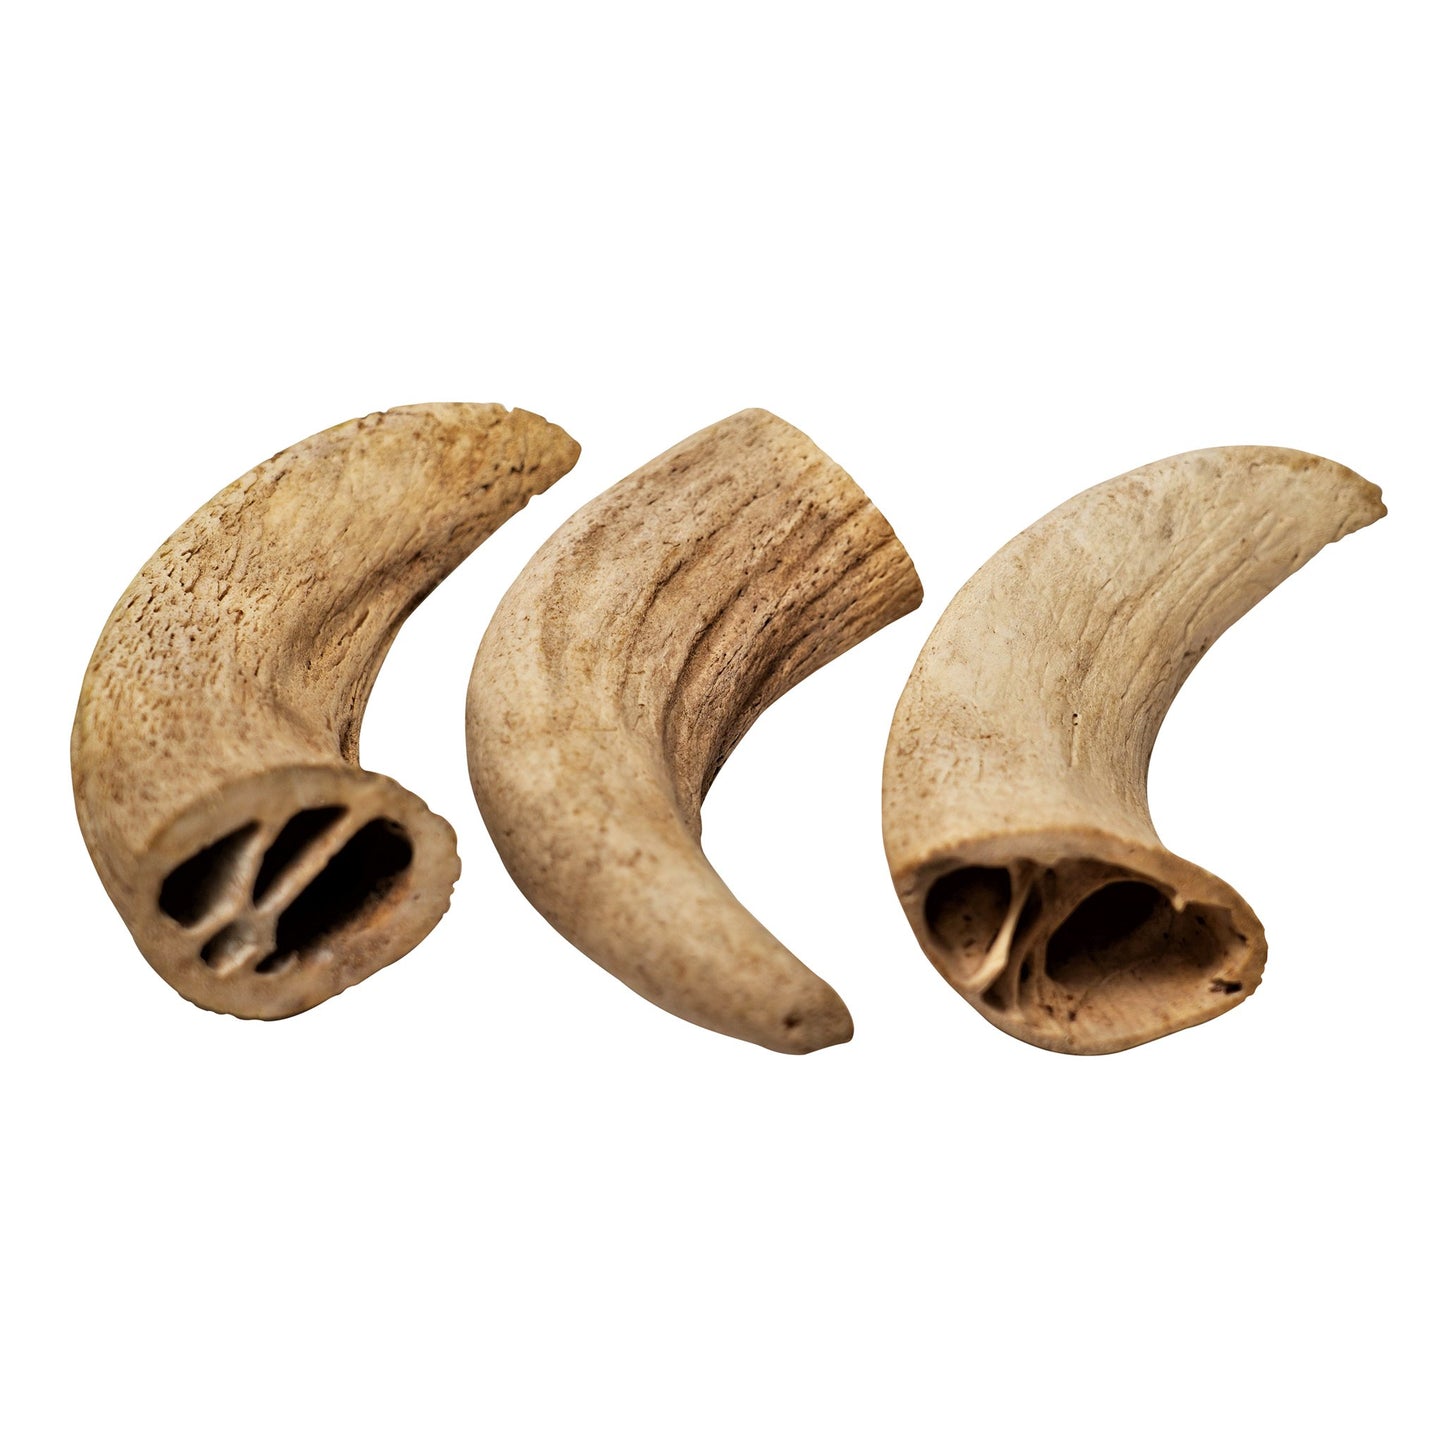 Water Buffalo Horn Core Dog Chews-2 Count-10 oz